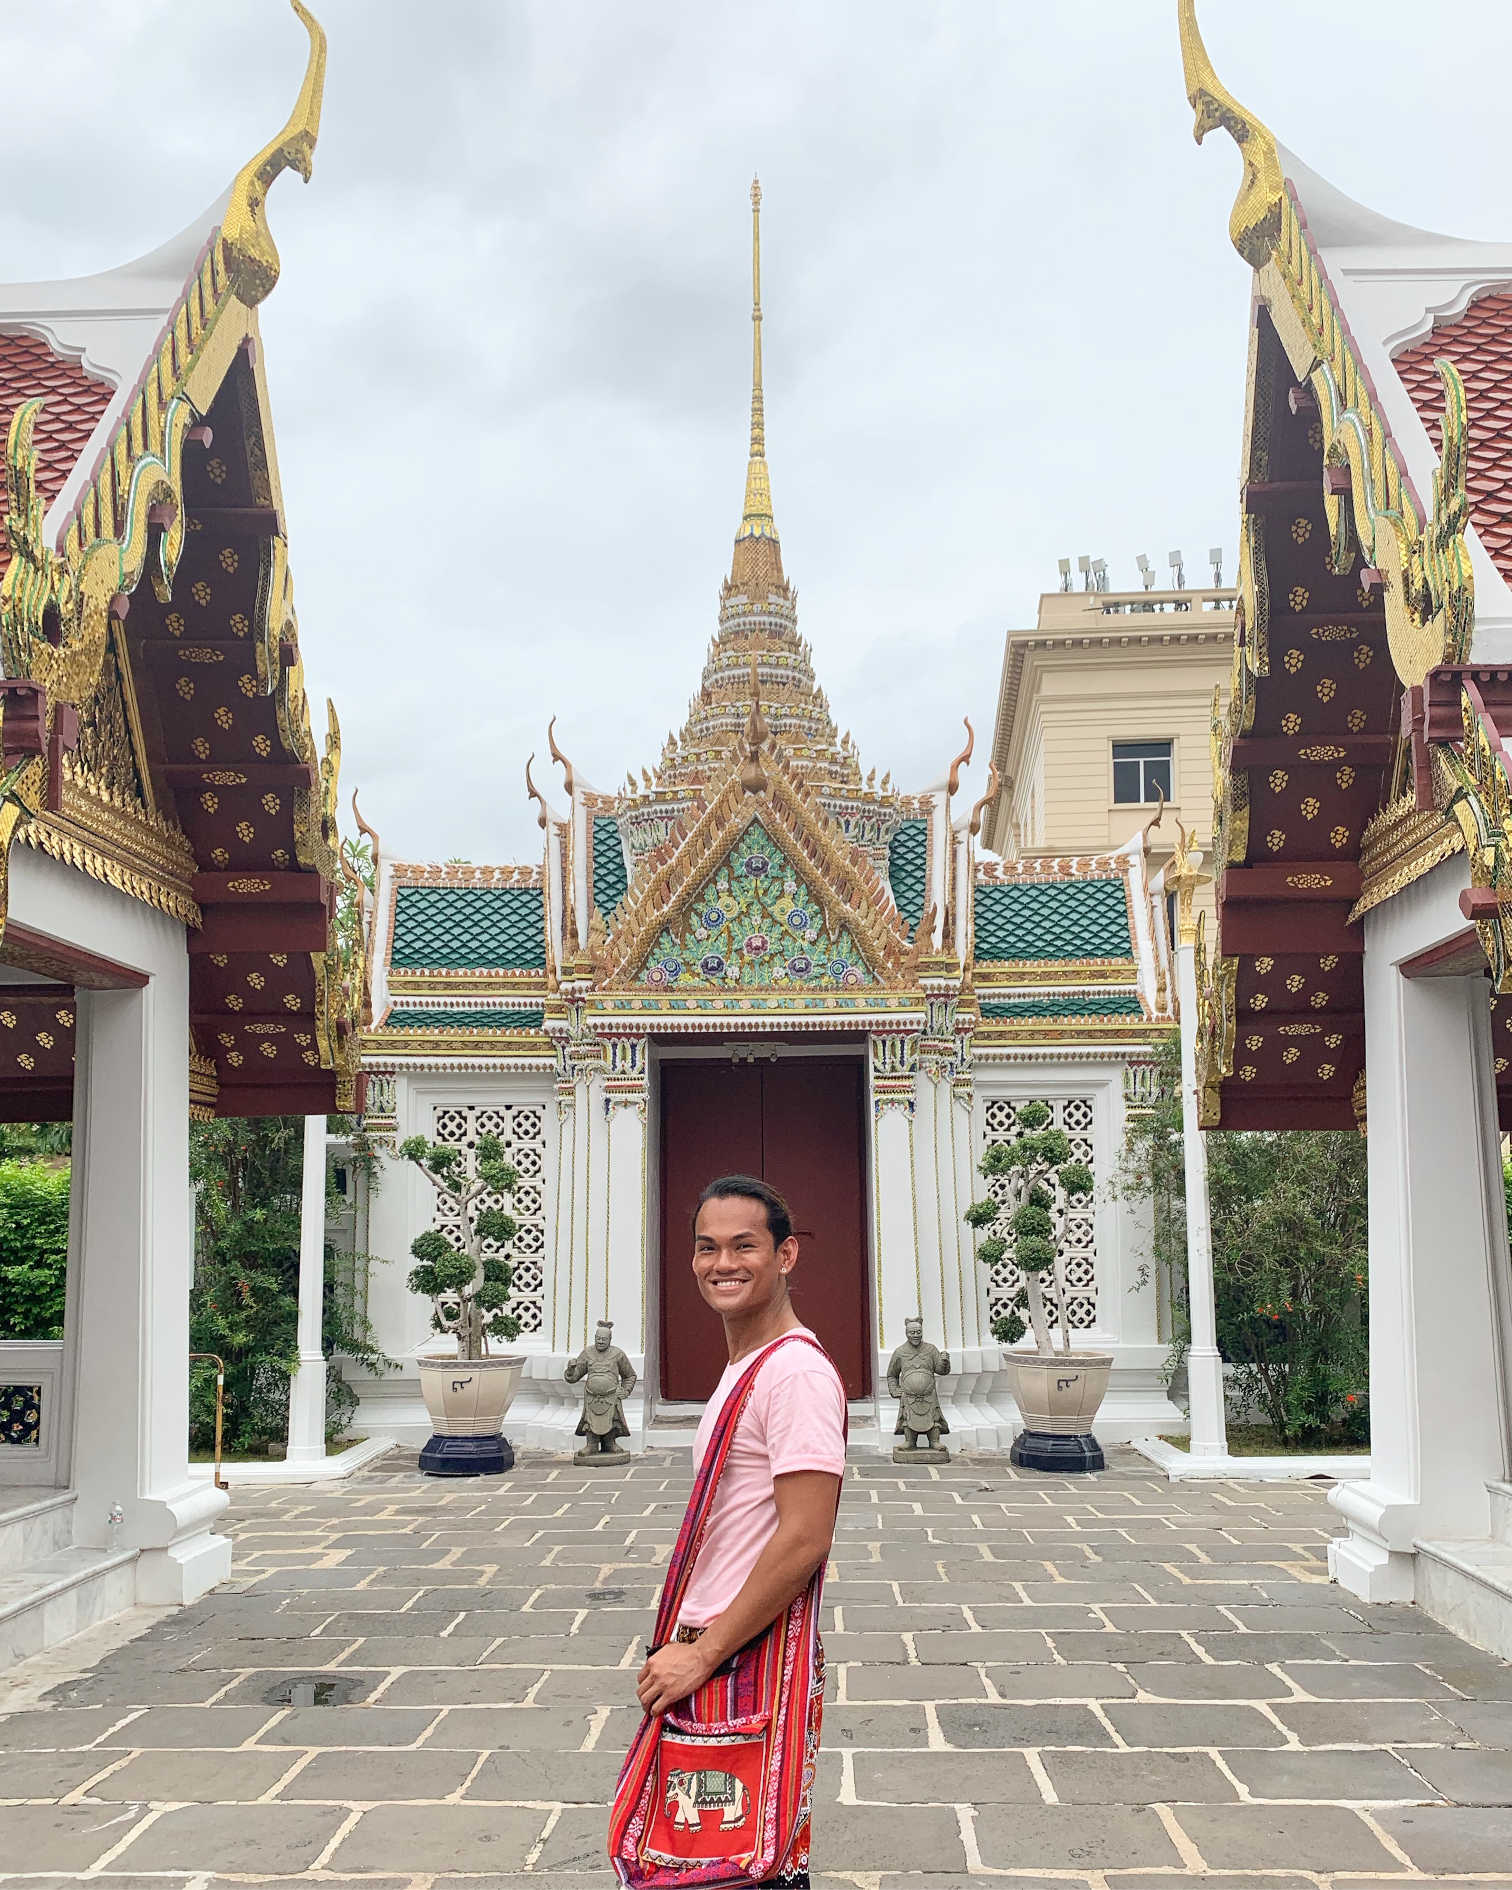 Grand Palace, Bangkok, Thailand